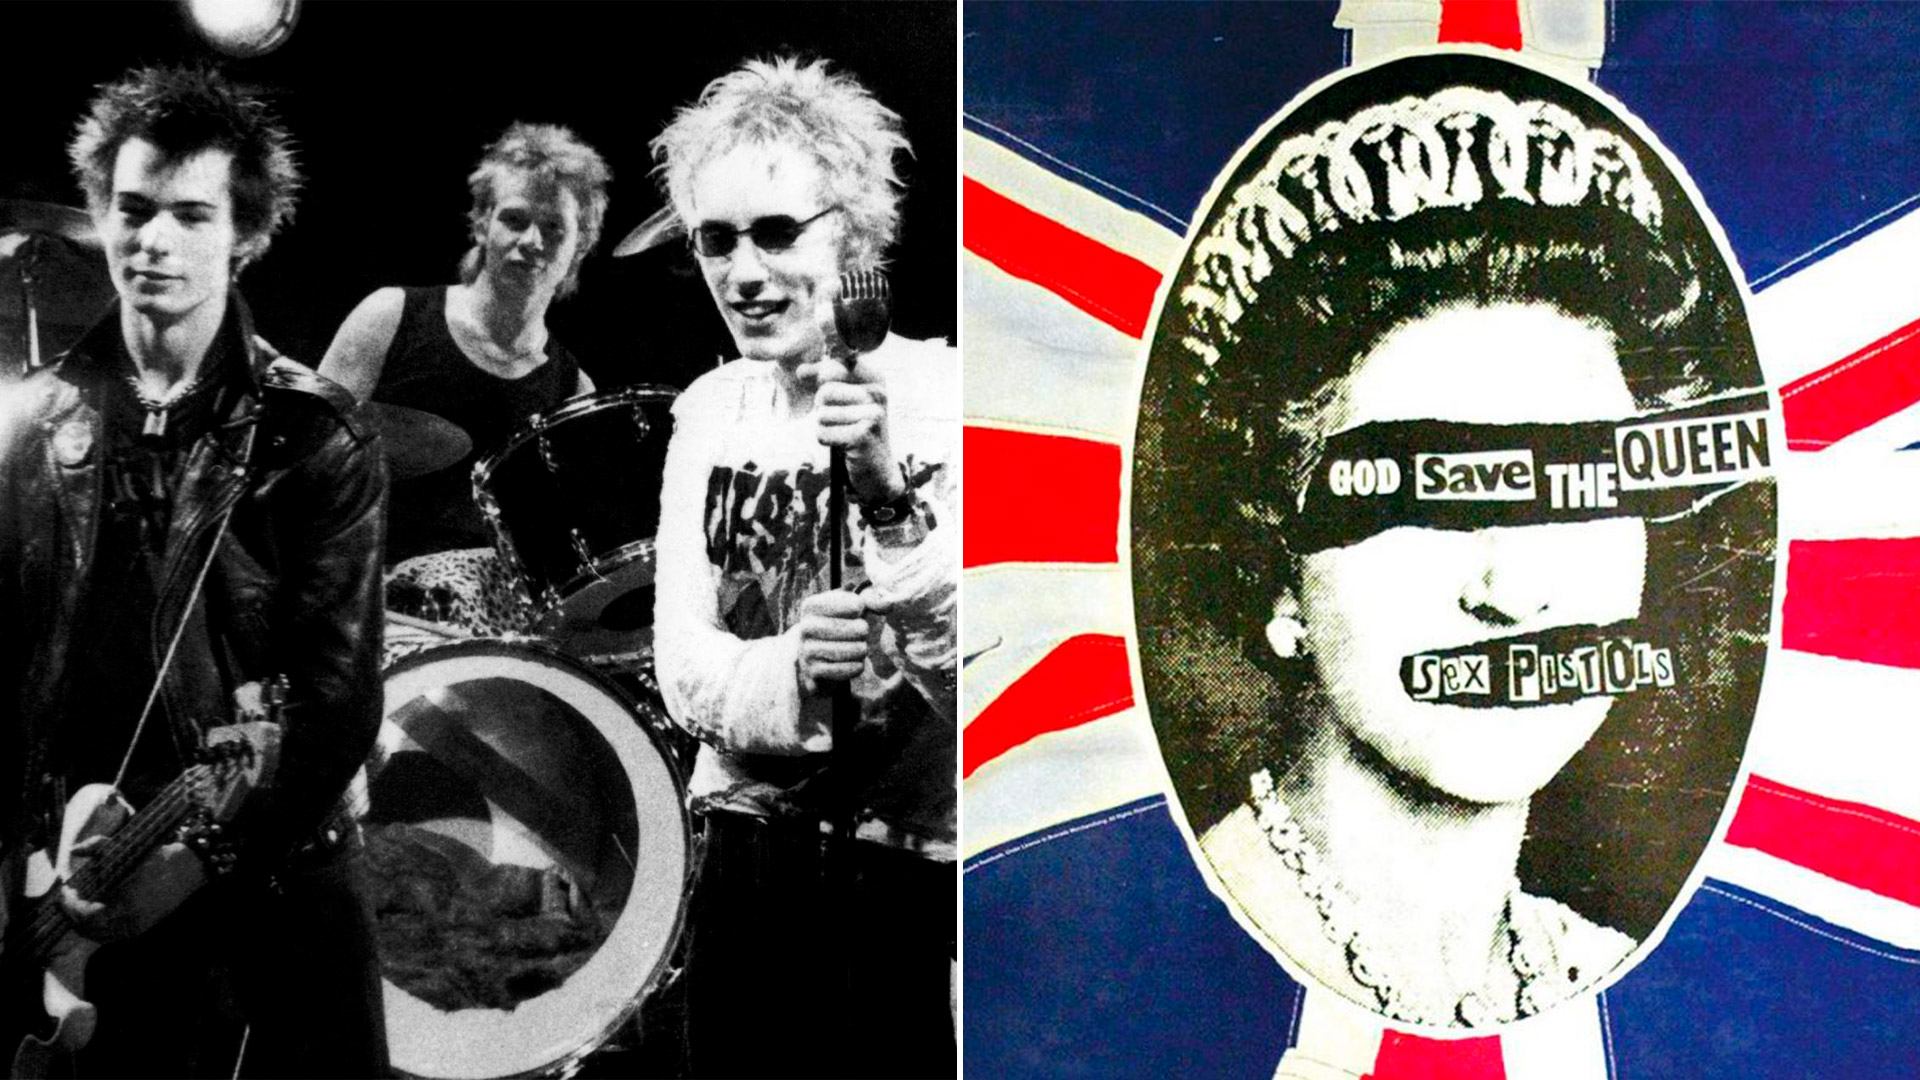 Los Sex Pistols y la Reina Isabel: del escandaloso concierto punk sobre un barco a los buenos deseos actuales